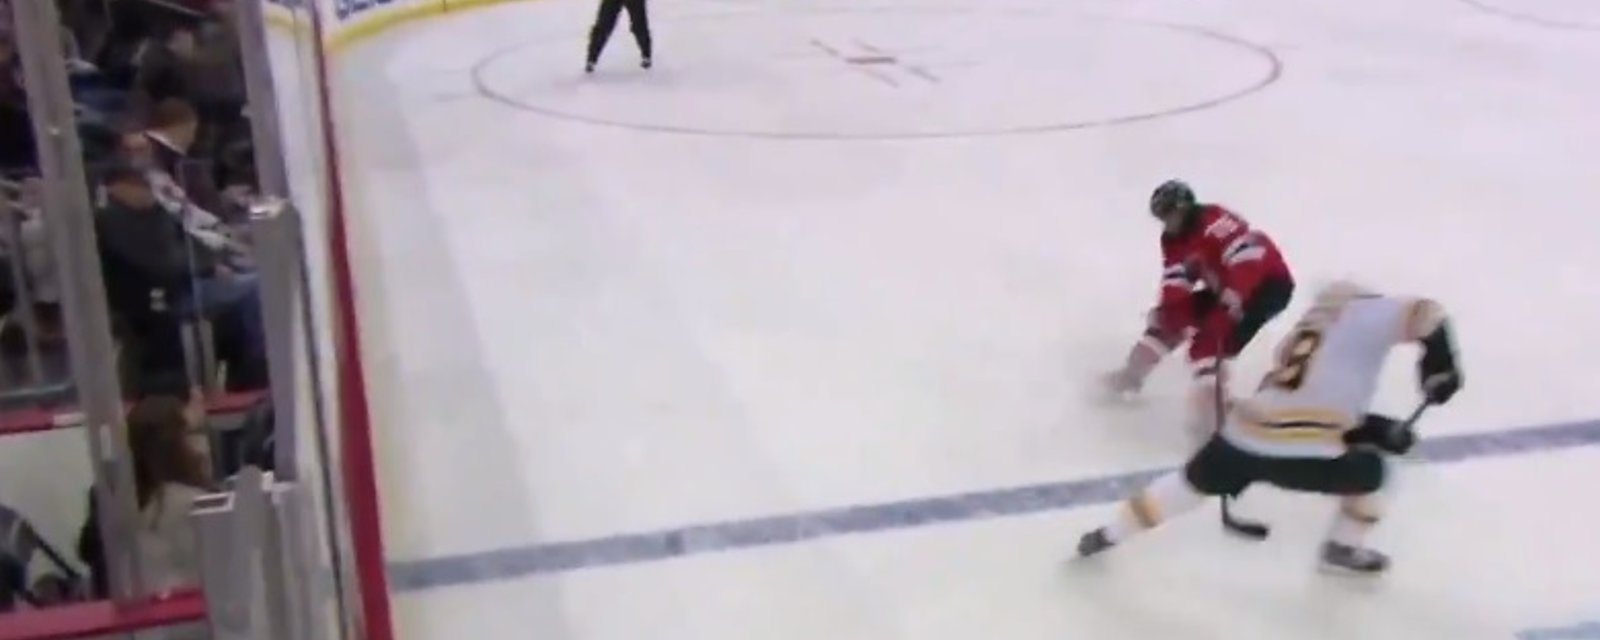 PK Subban s'est fait sortir de ses patins face aux Bruins!